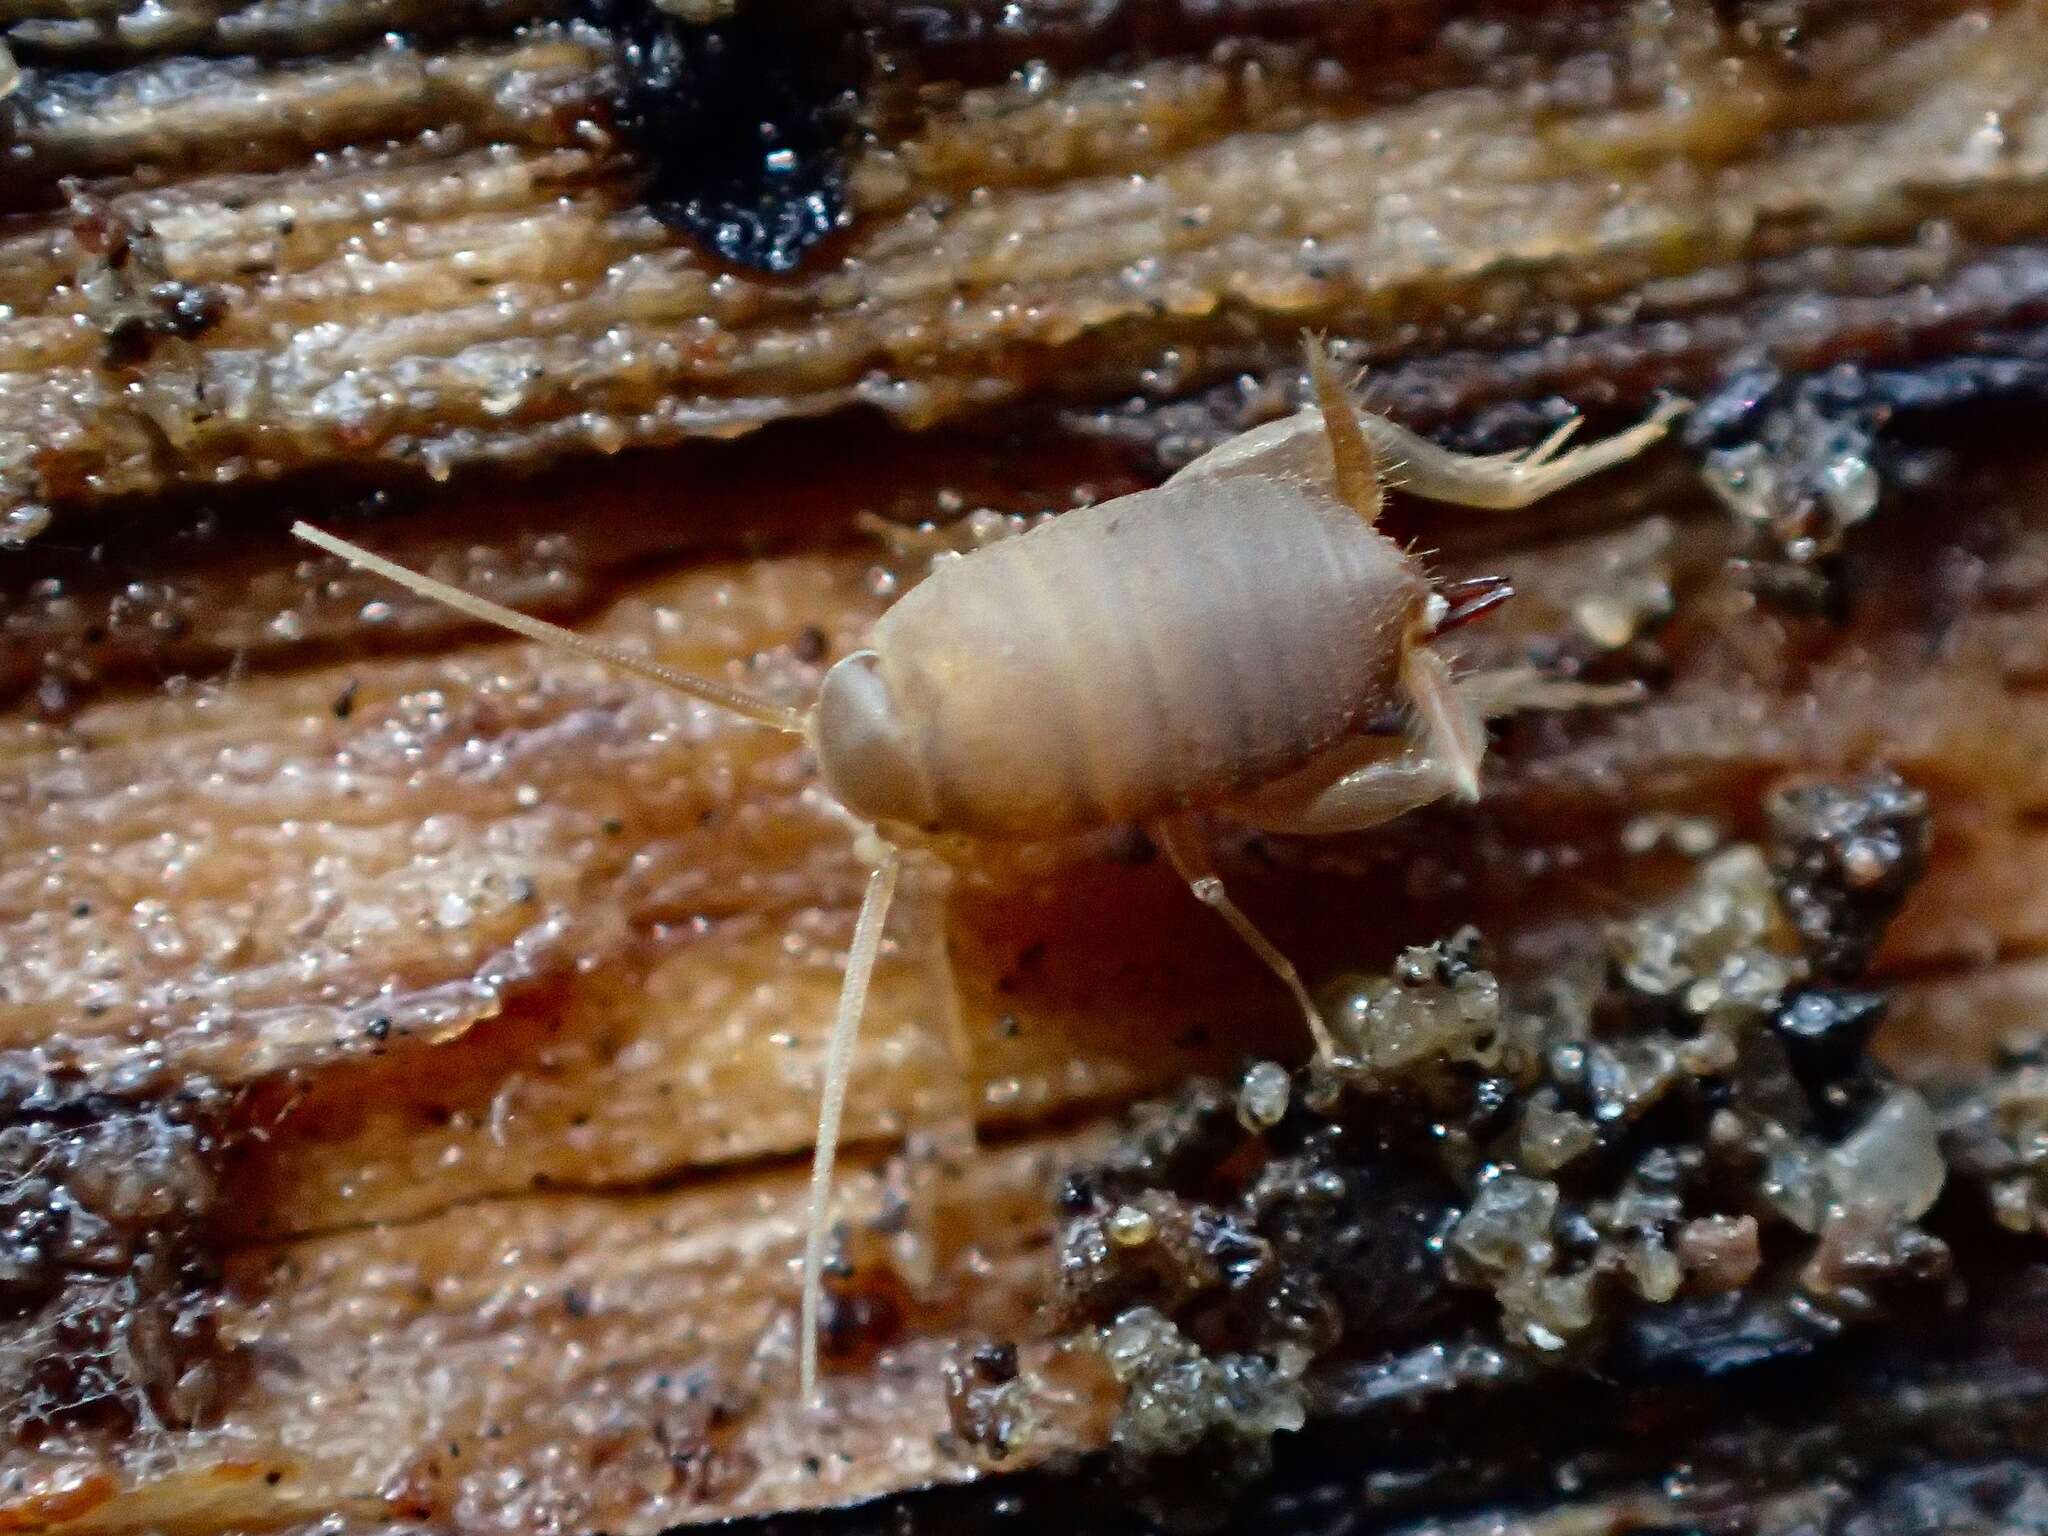 Image of Oregon Ant Cricket